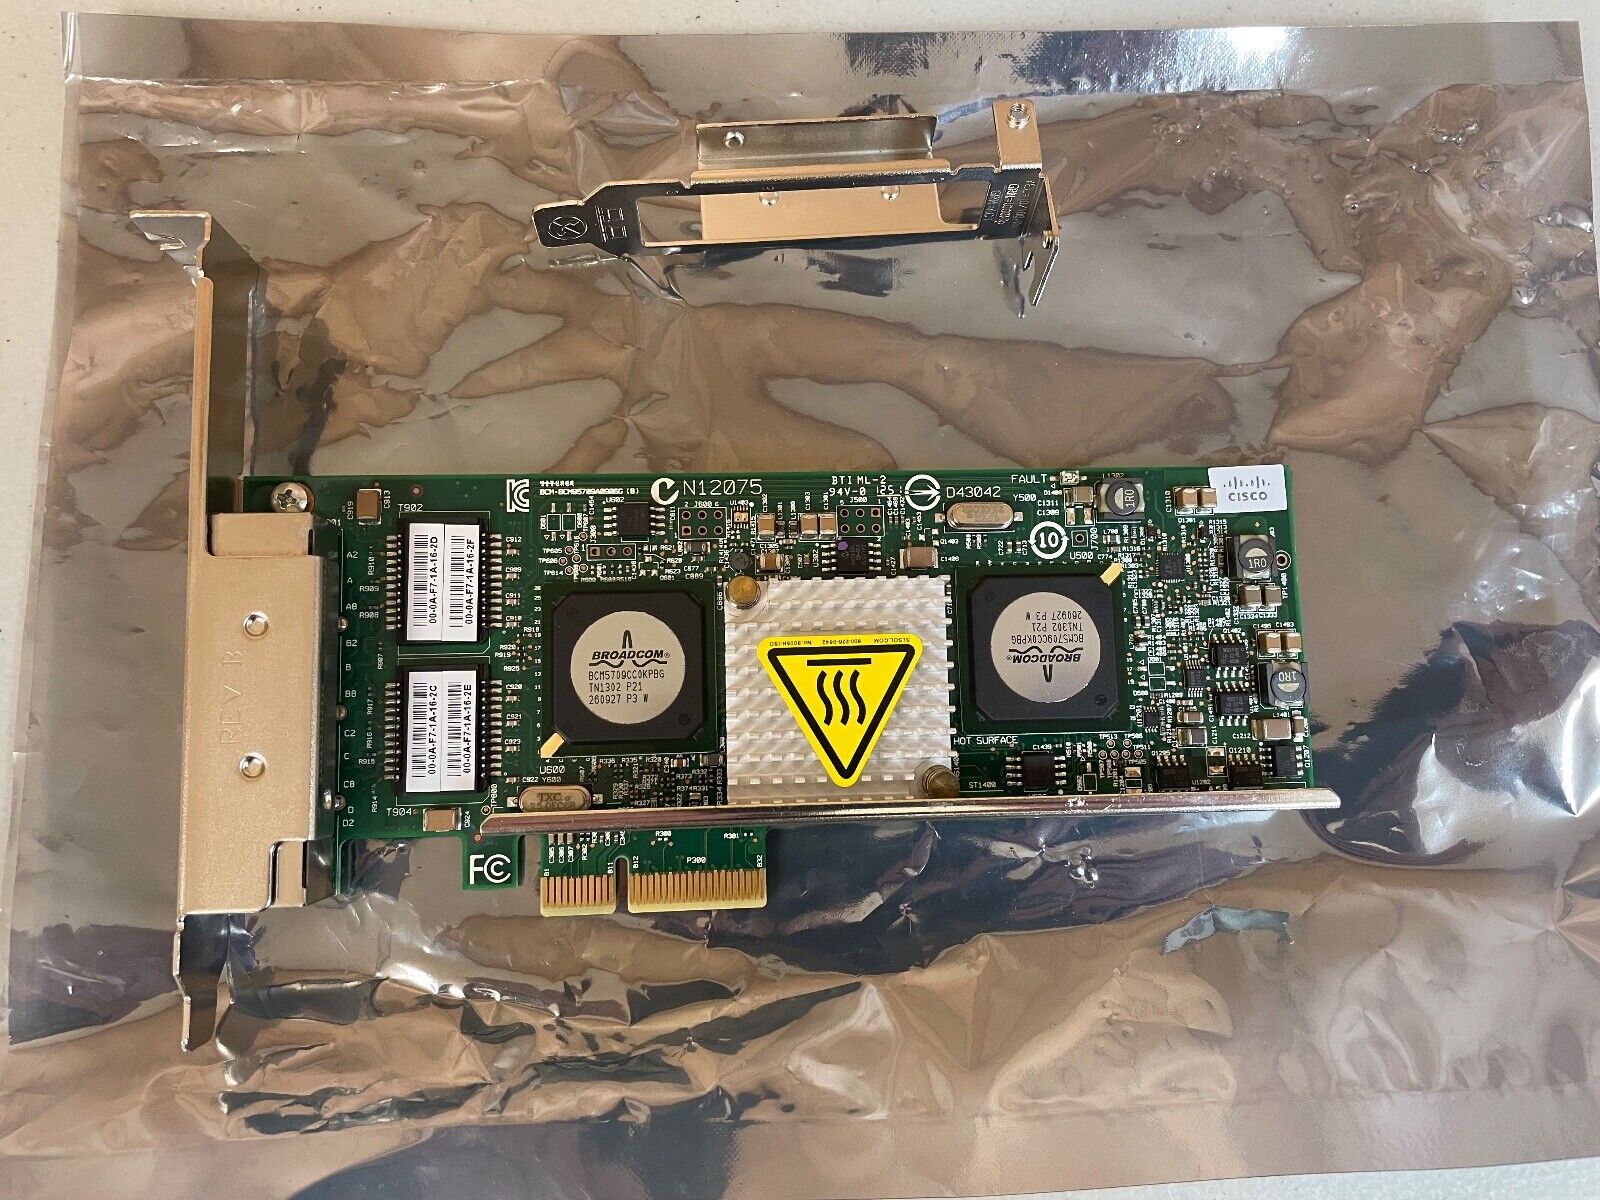 New Cisco Broadcom PCI-E 4 Port GBit Network Card BCM5709CC0KPBG with riser